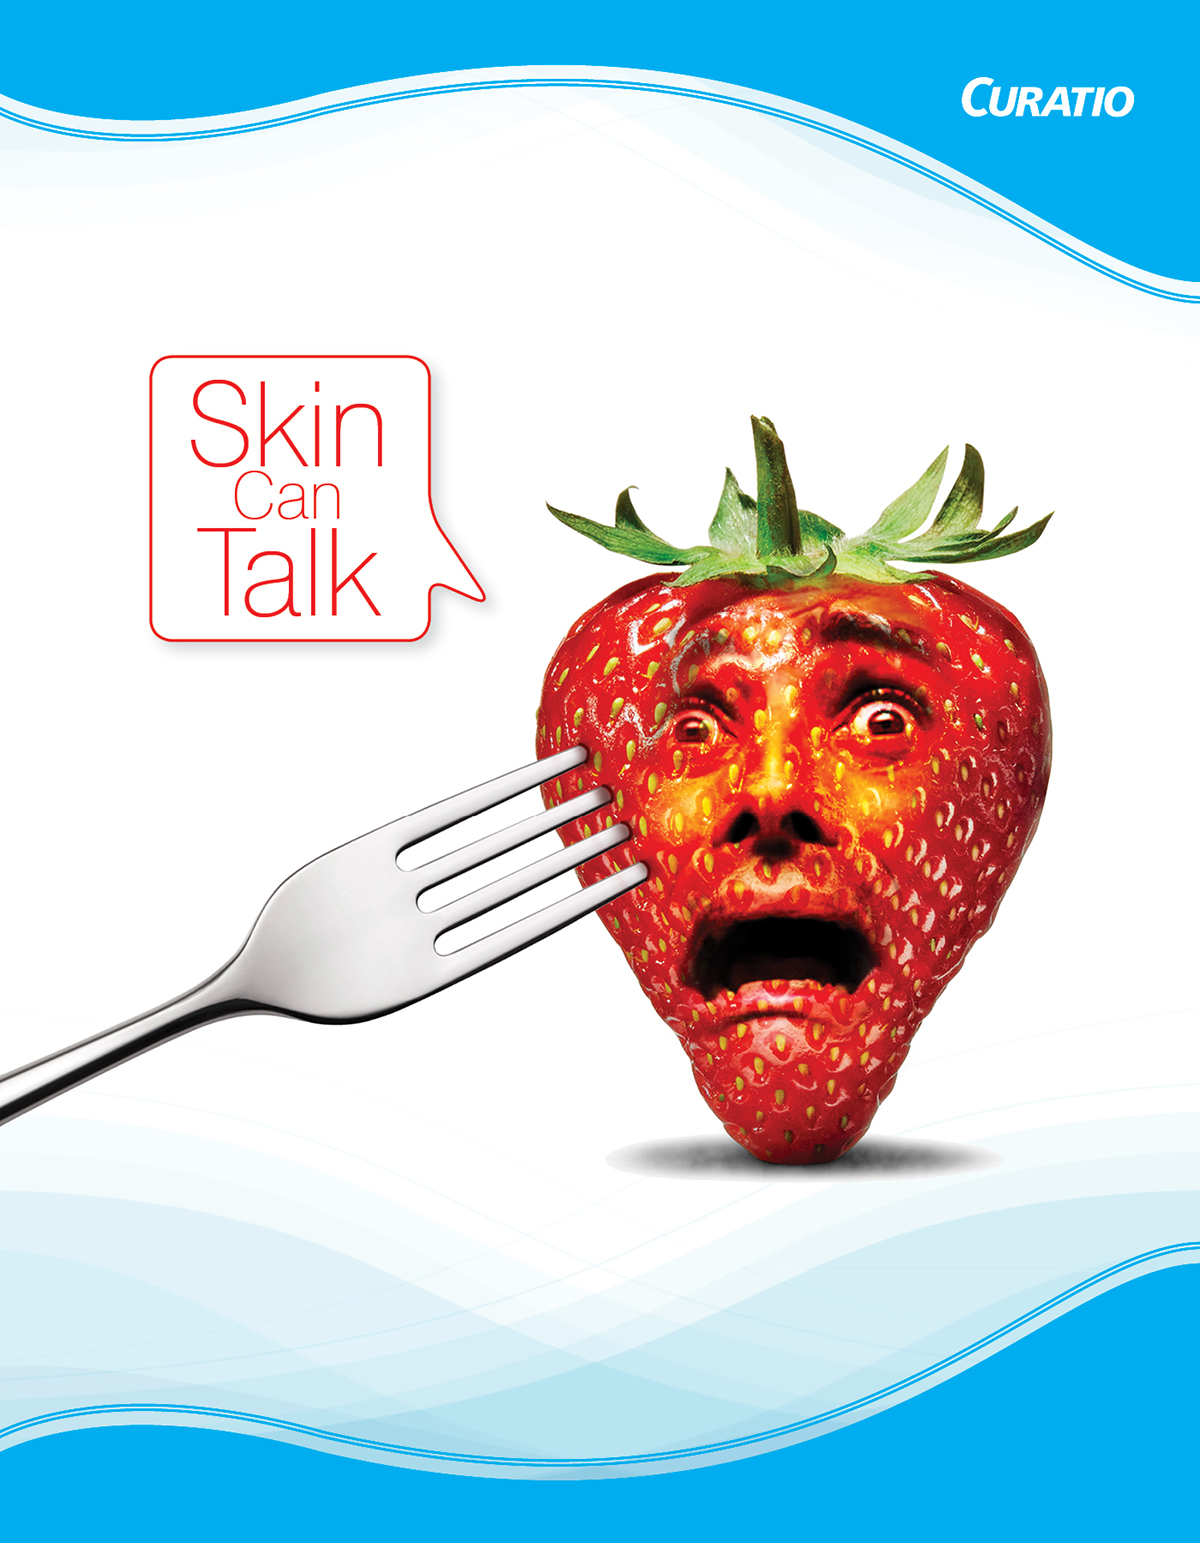 skincanspeak curatio Pharma skin fruits manupilation Photoshoped